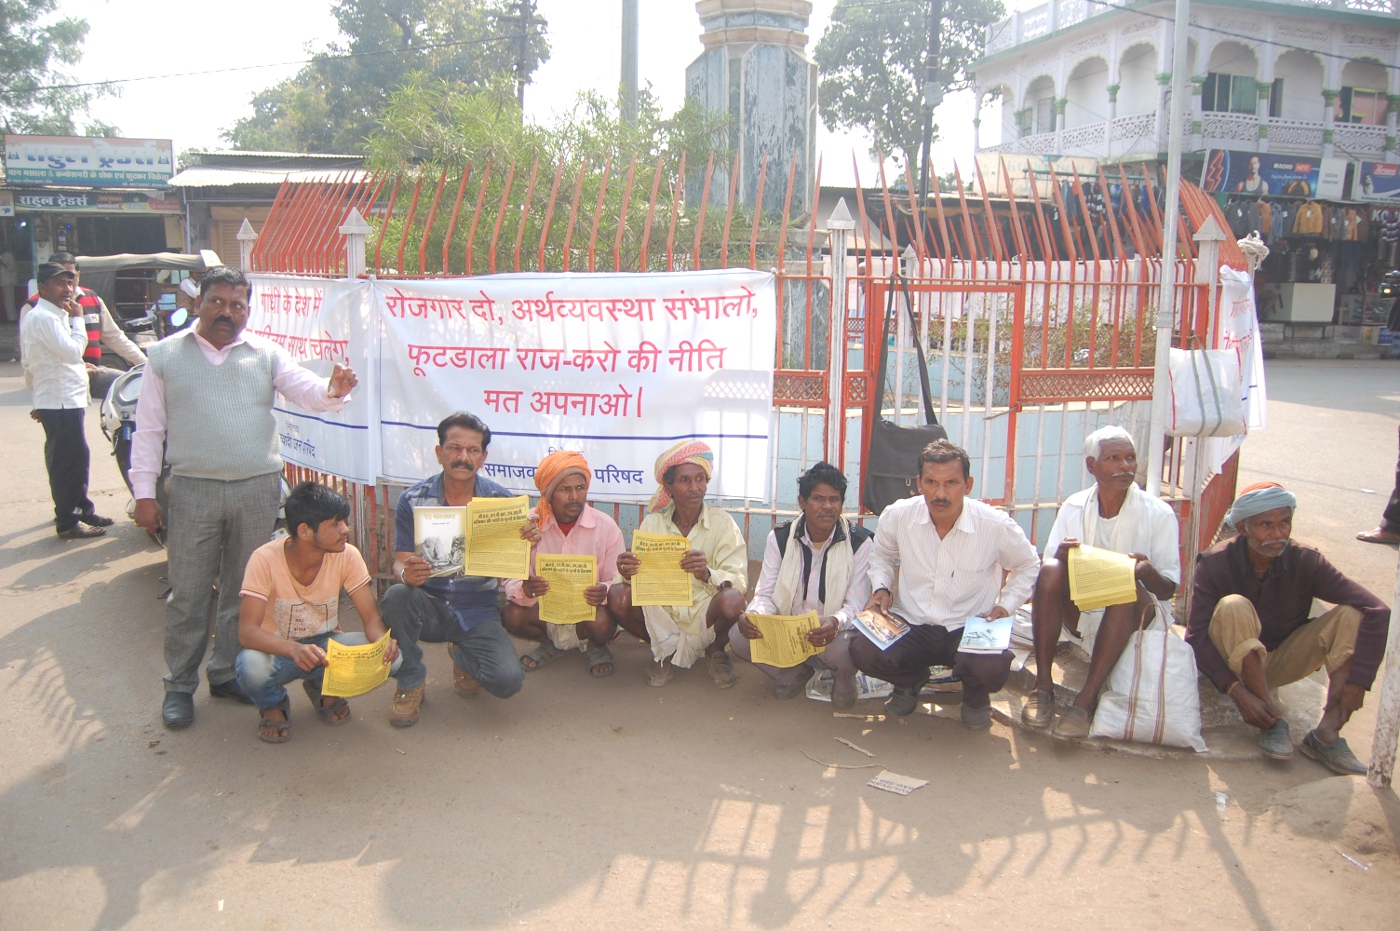 सोनिया गांधी का सीएए, एनआरसी के खिलाफ विरोध जारी, लेकिन हरदा जिले में सो रही है कांग्रेस